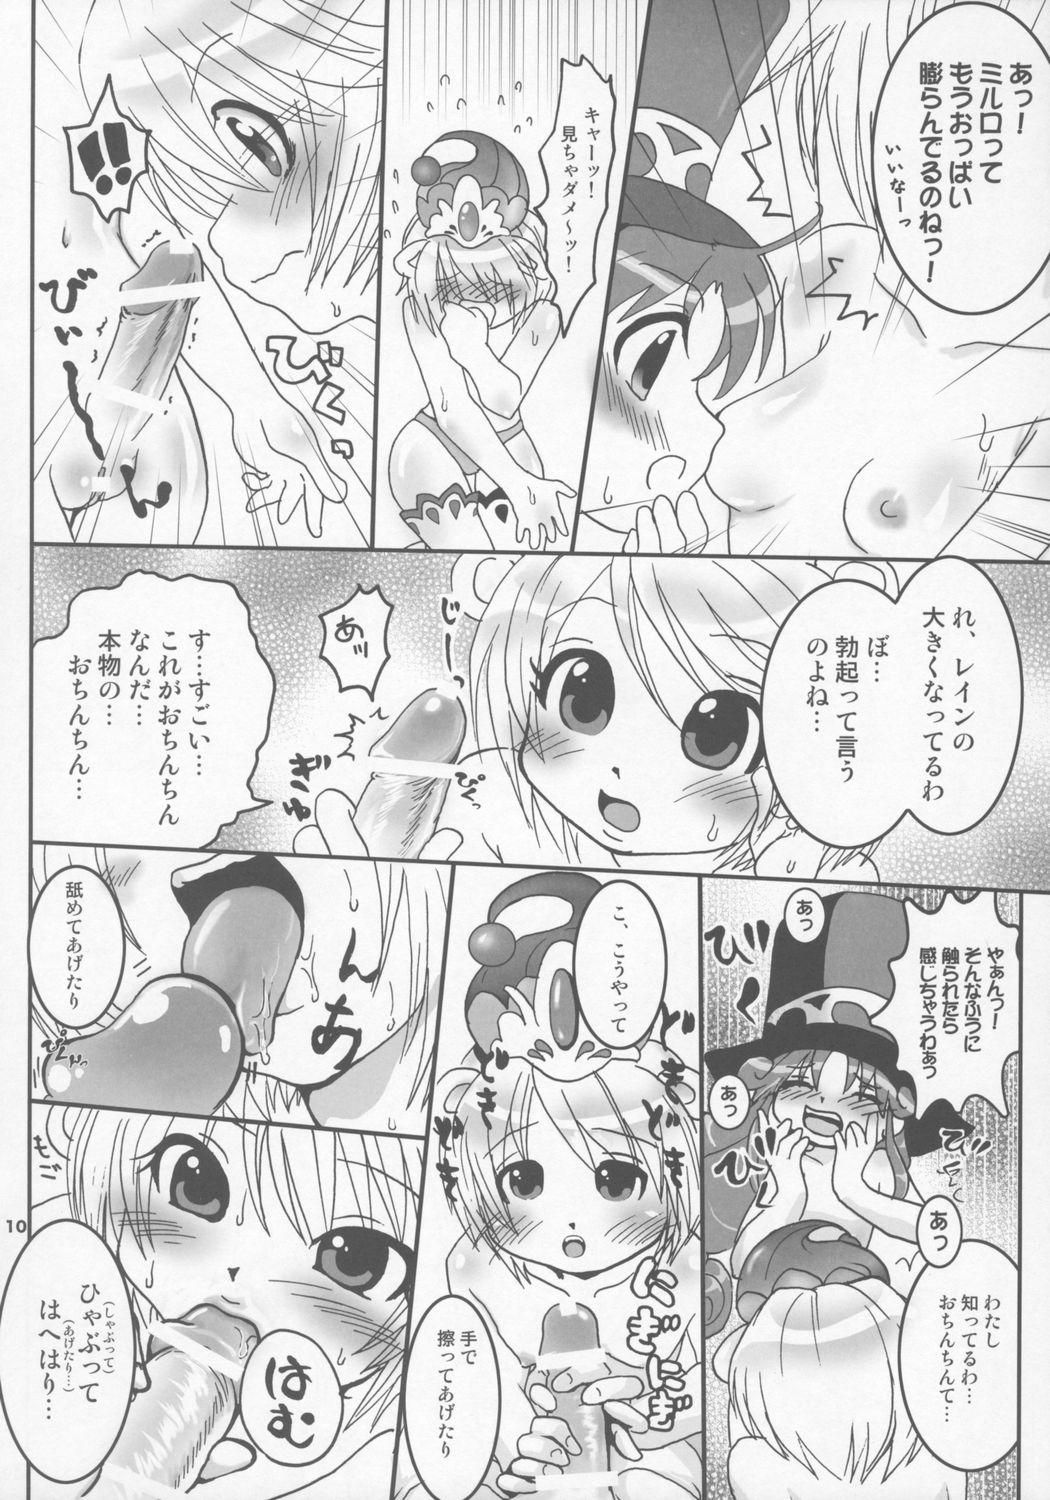 Cutie Tonikaku Yattemiyou! - Fushigiboshi no futagohime Sucking Cocks - Page 9